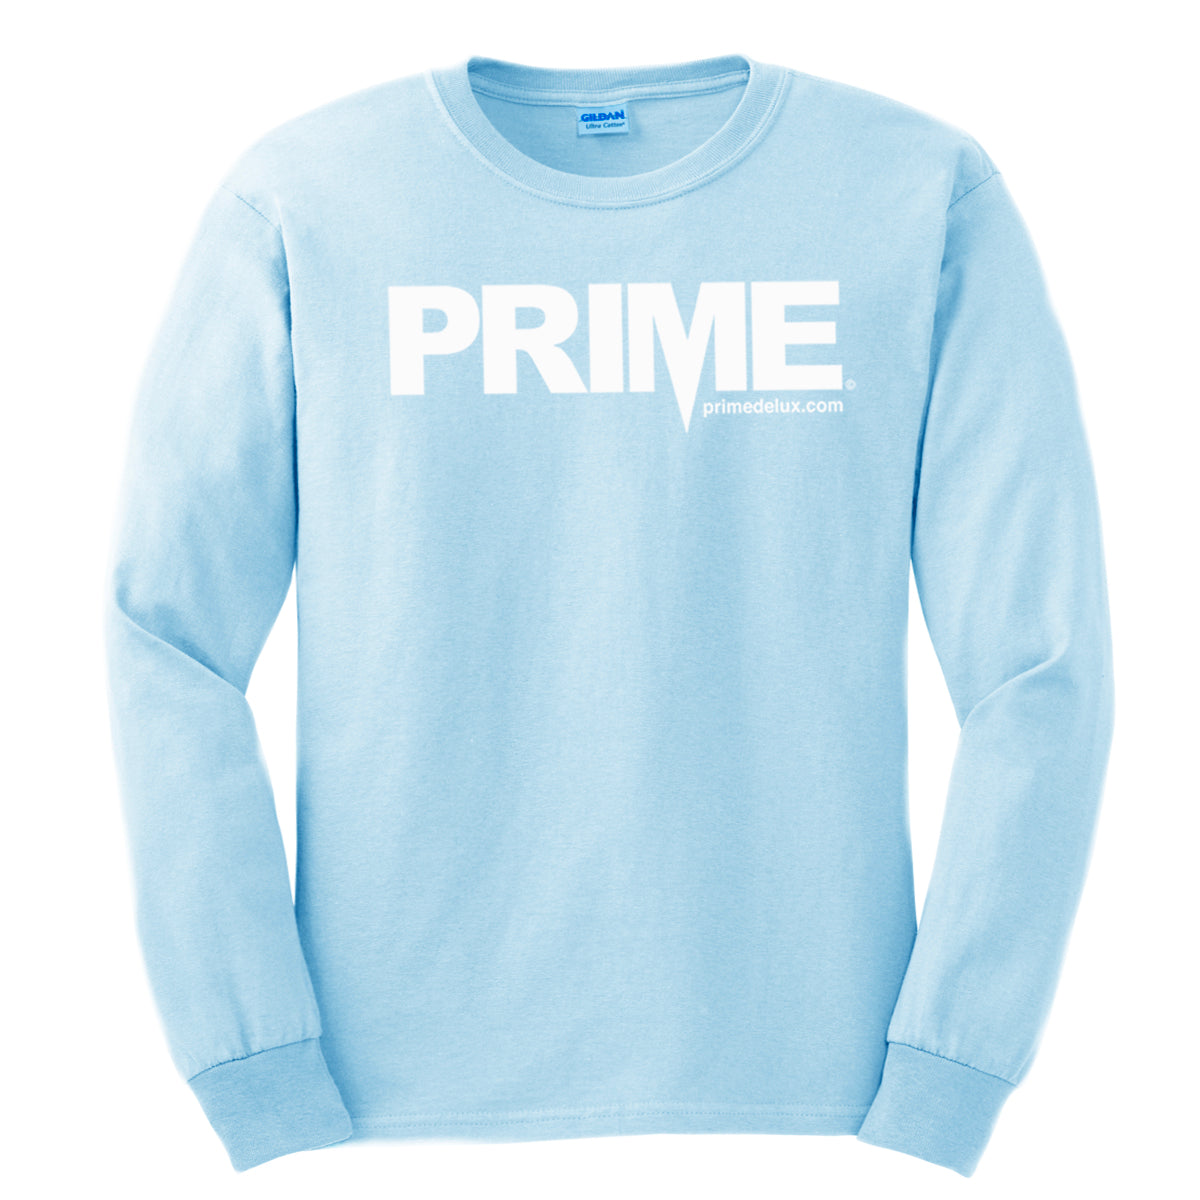 Prime Delux OG Logo Long Sleeve T Shirt - Pastel Blue / White - Prime Delux Store